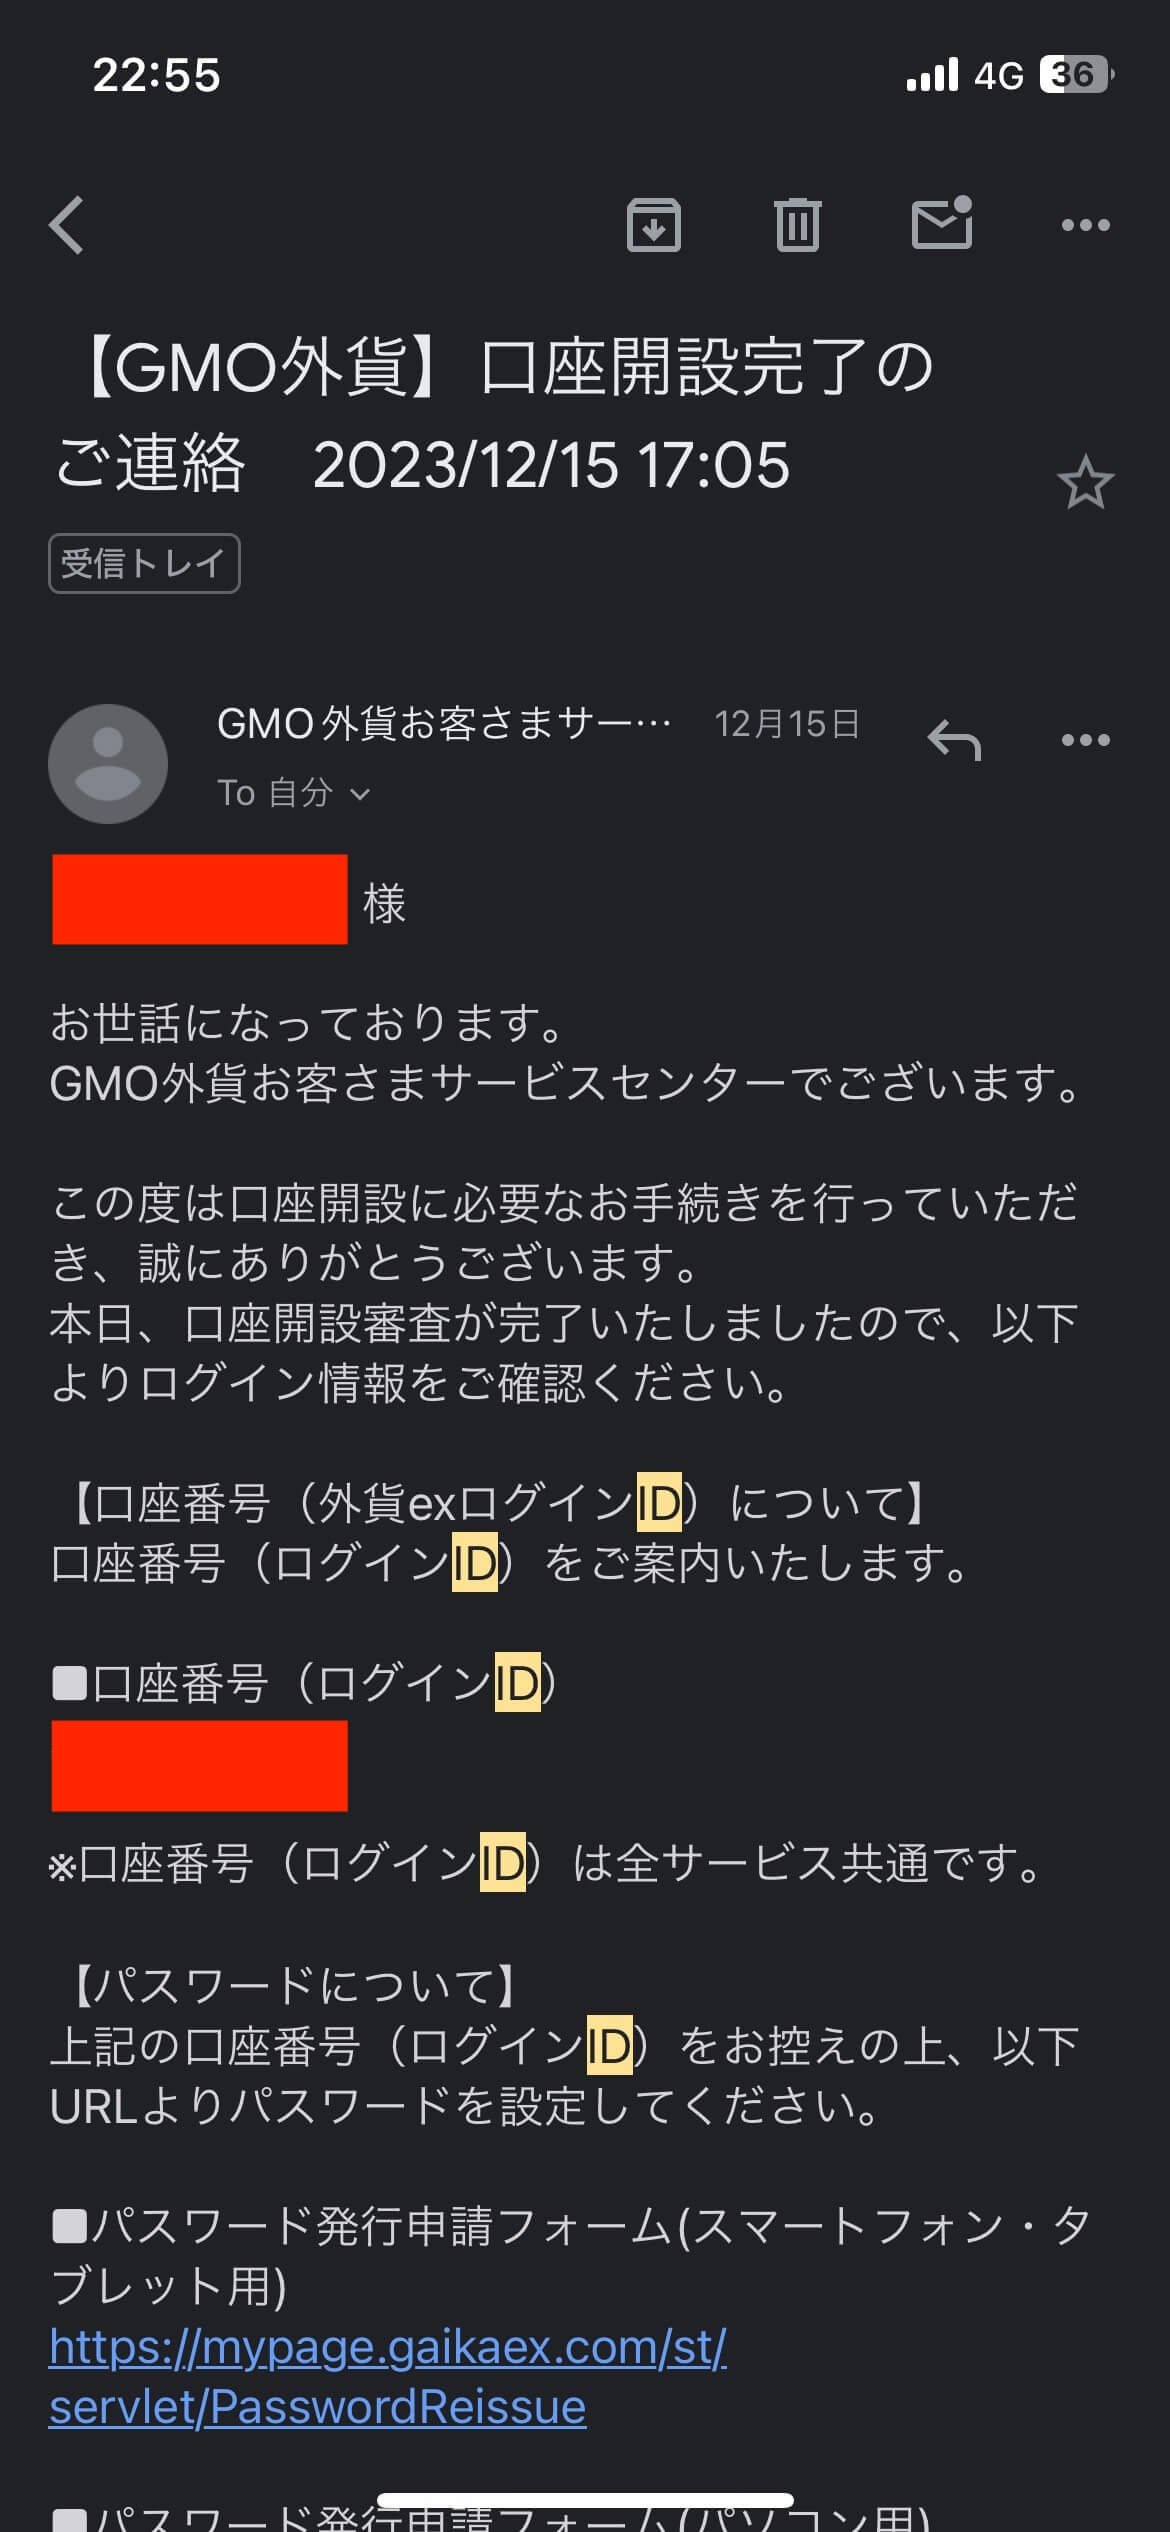 GMO外貨のID・PW送付メール